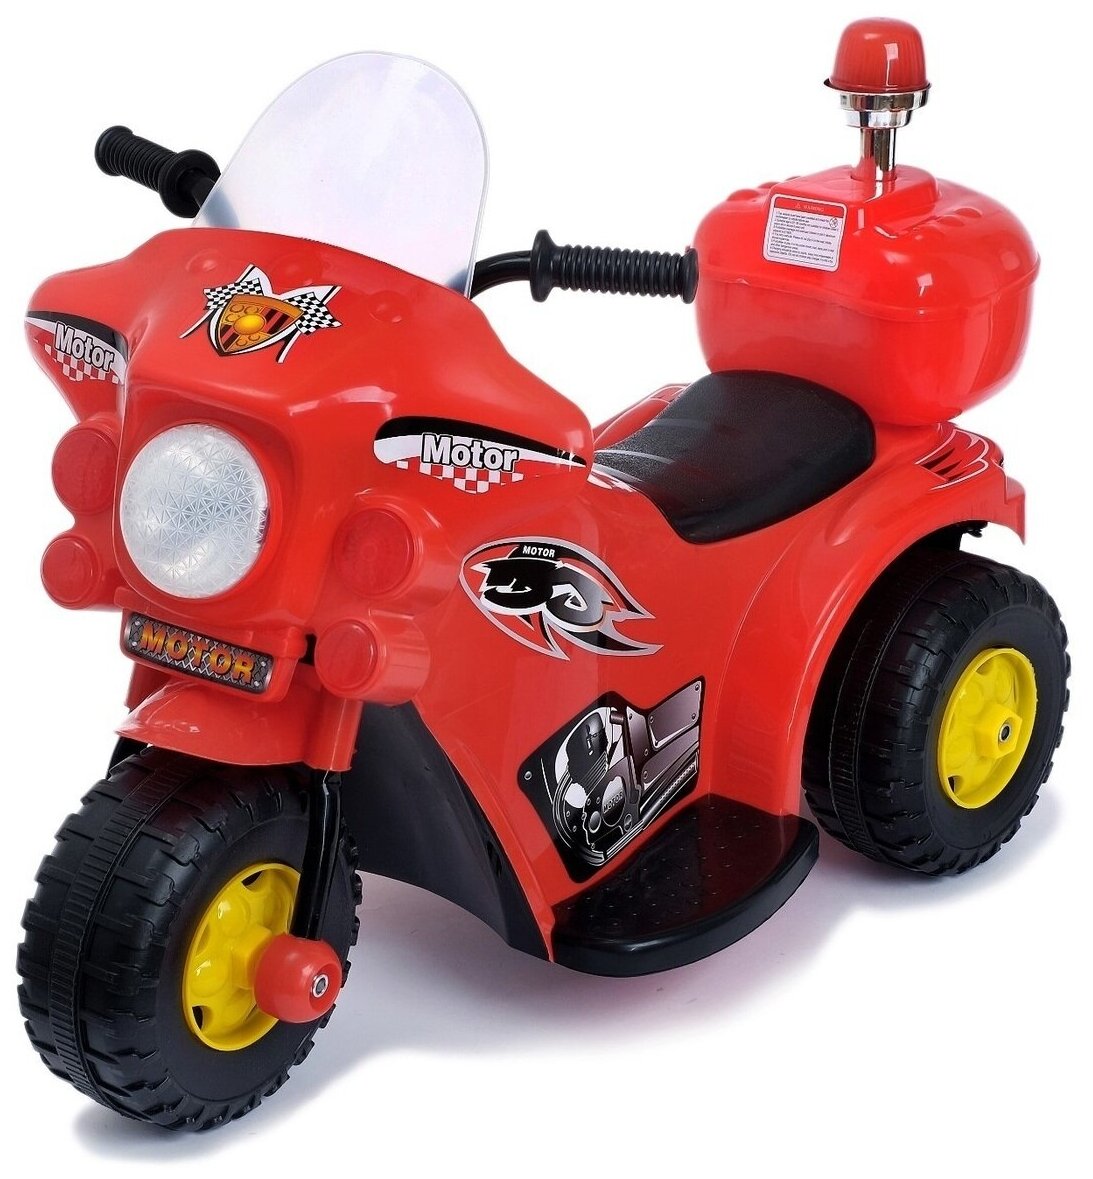 Электромобиль"Мотоцикл шерифа", цвет красный / детский траспорт / каталка для малышей / подарок на день рождения ребенку / для игр на улице /